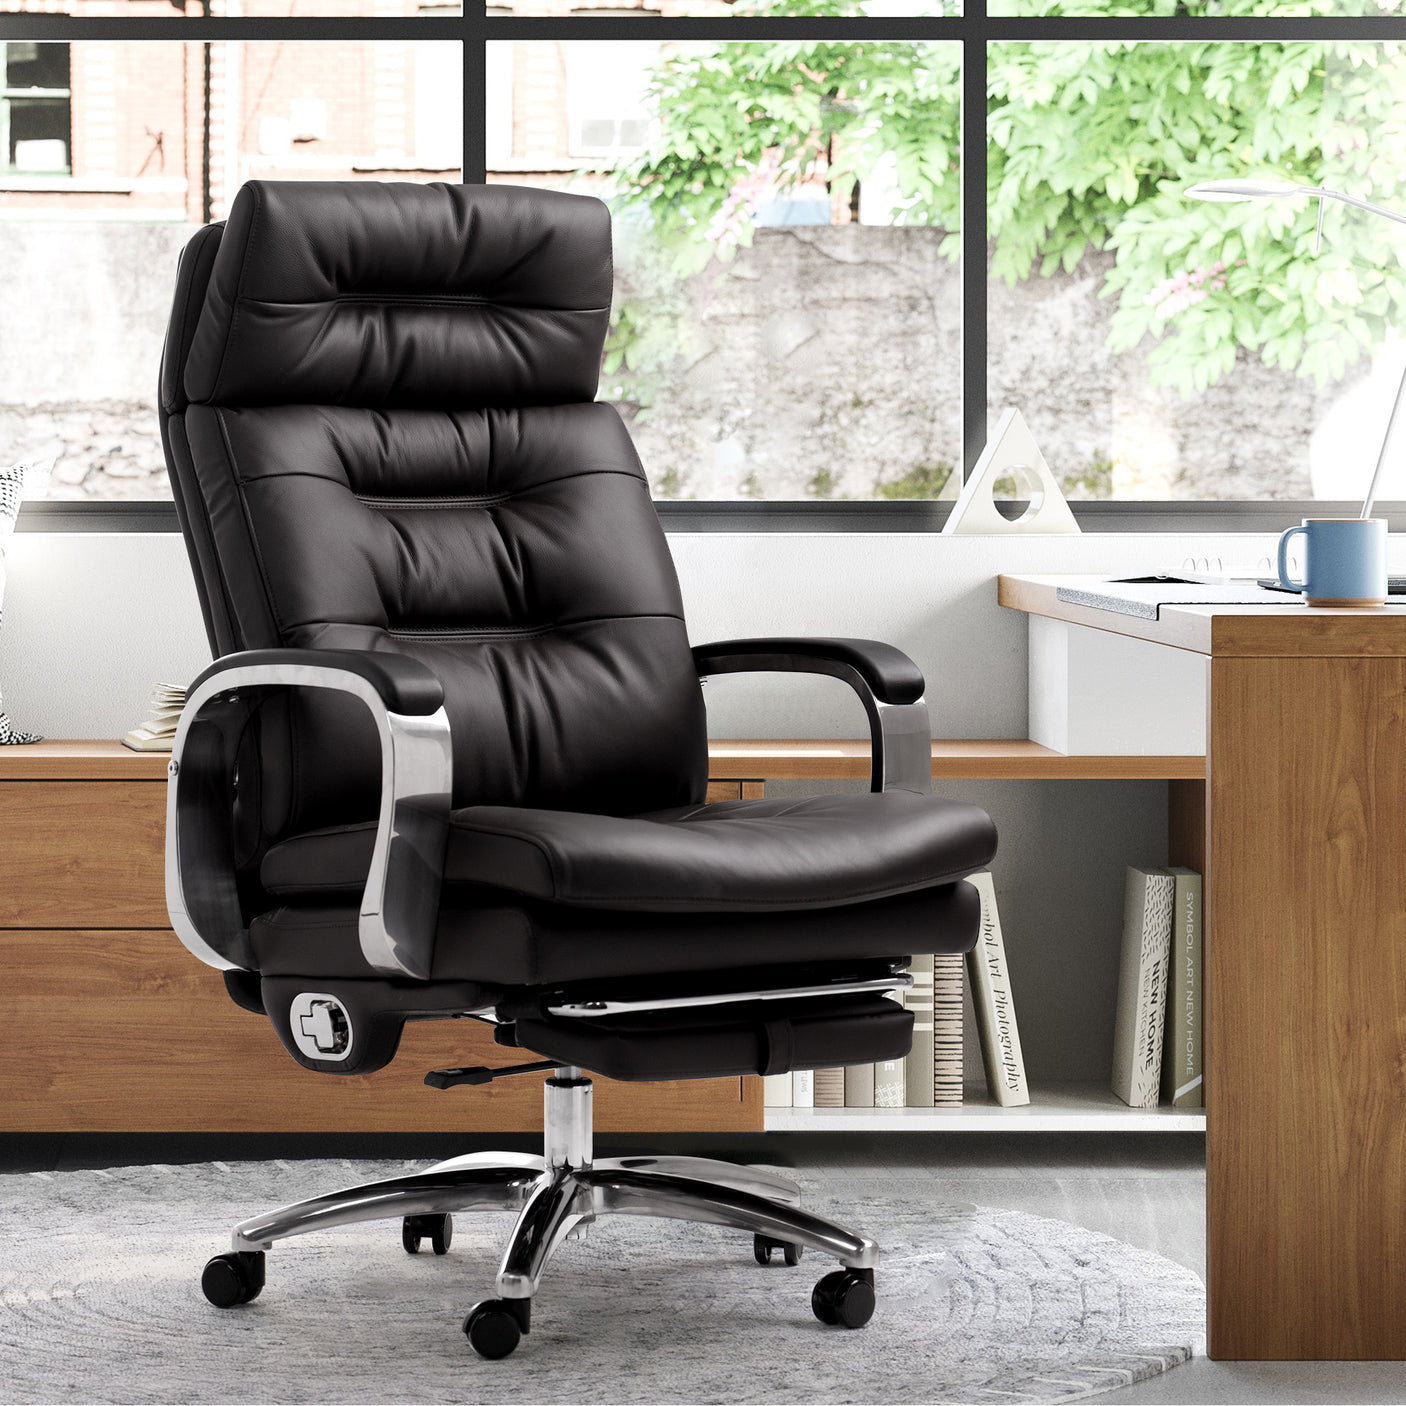 Afvige rækkevidde Afskrække Vane Thick High Back Office Leather Office Chair – KINNLS